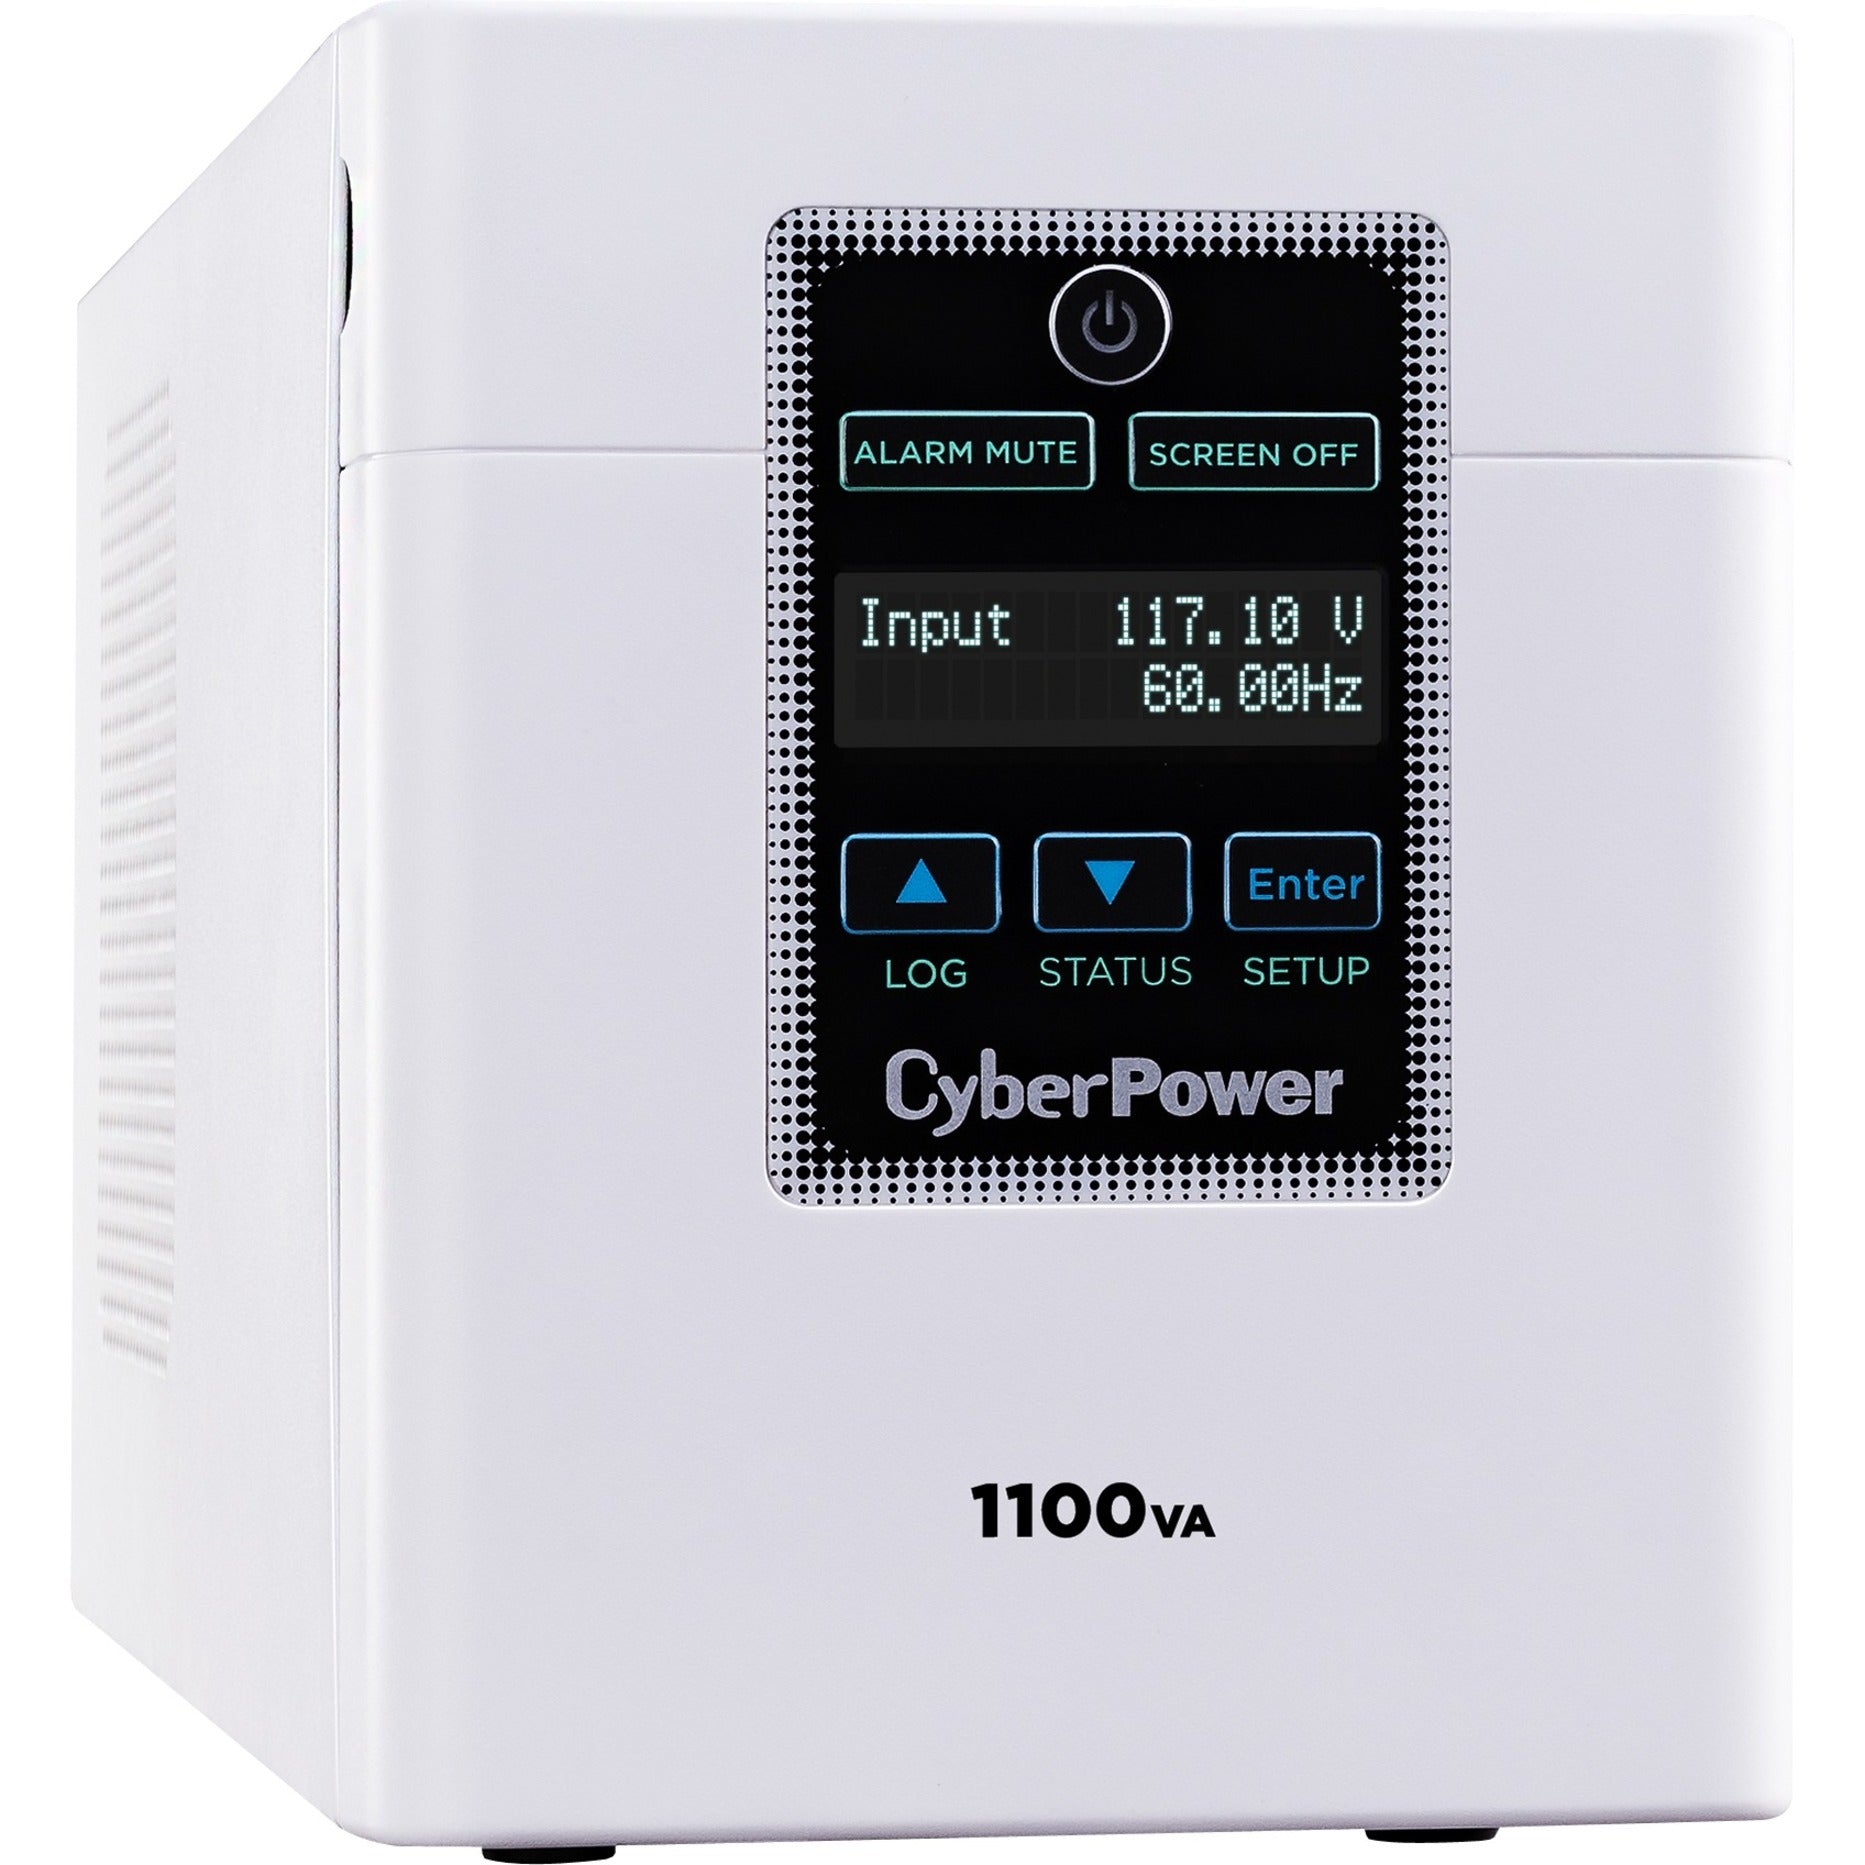 サイバーパワー M1100XL メディカルグレード 1100VA/880W UPS、エネルギースター、3年保証、RoHS認定  ブランド名：サイバーパワー (CyberPower)